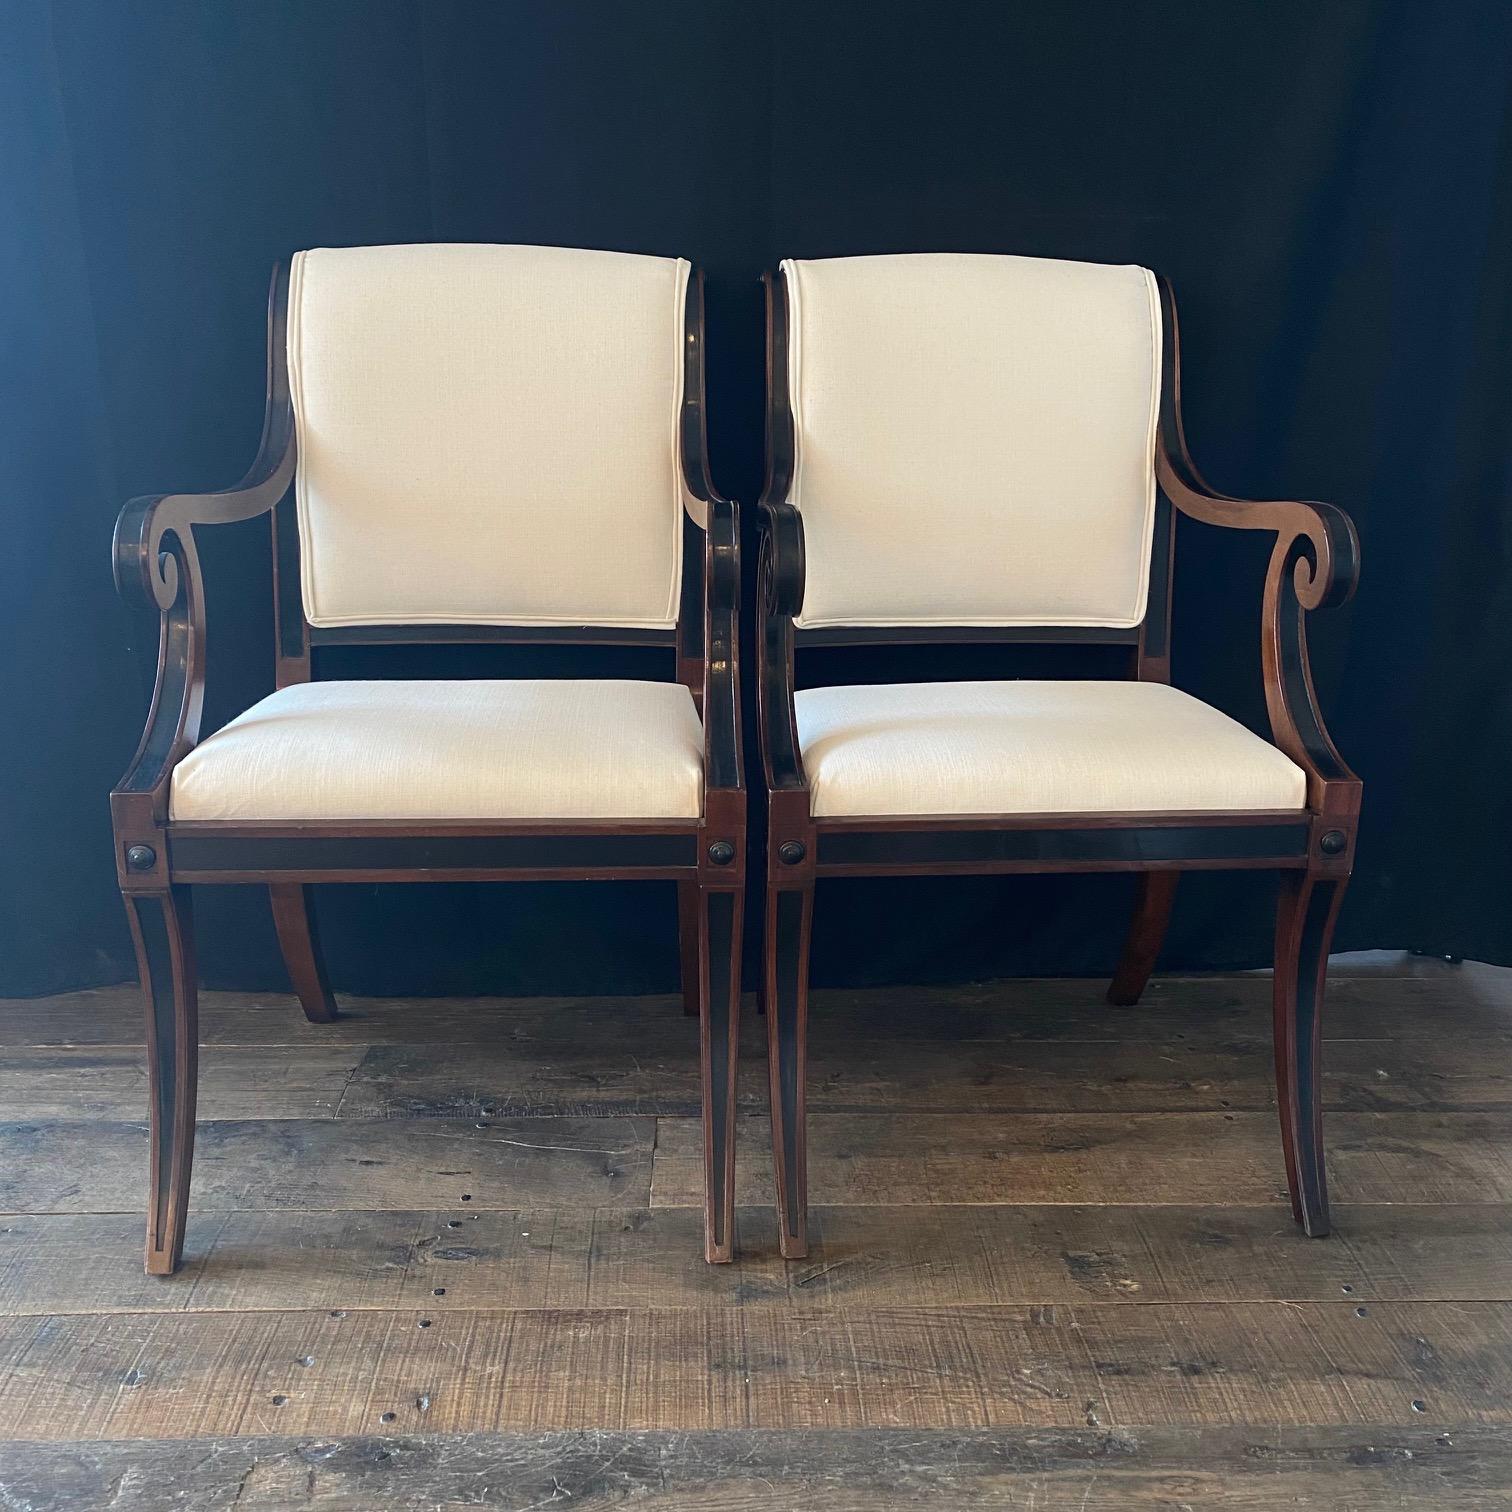 Un ensemble spectaculaire de chaises de salle à manger klismos : style néoclassique en ébène et acajou avec un nouveau revêtement neutre haut de gamme conçu pour mettre en valeur le design classique de chaque chaise. Deux fauteuils et trois chaises